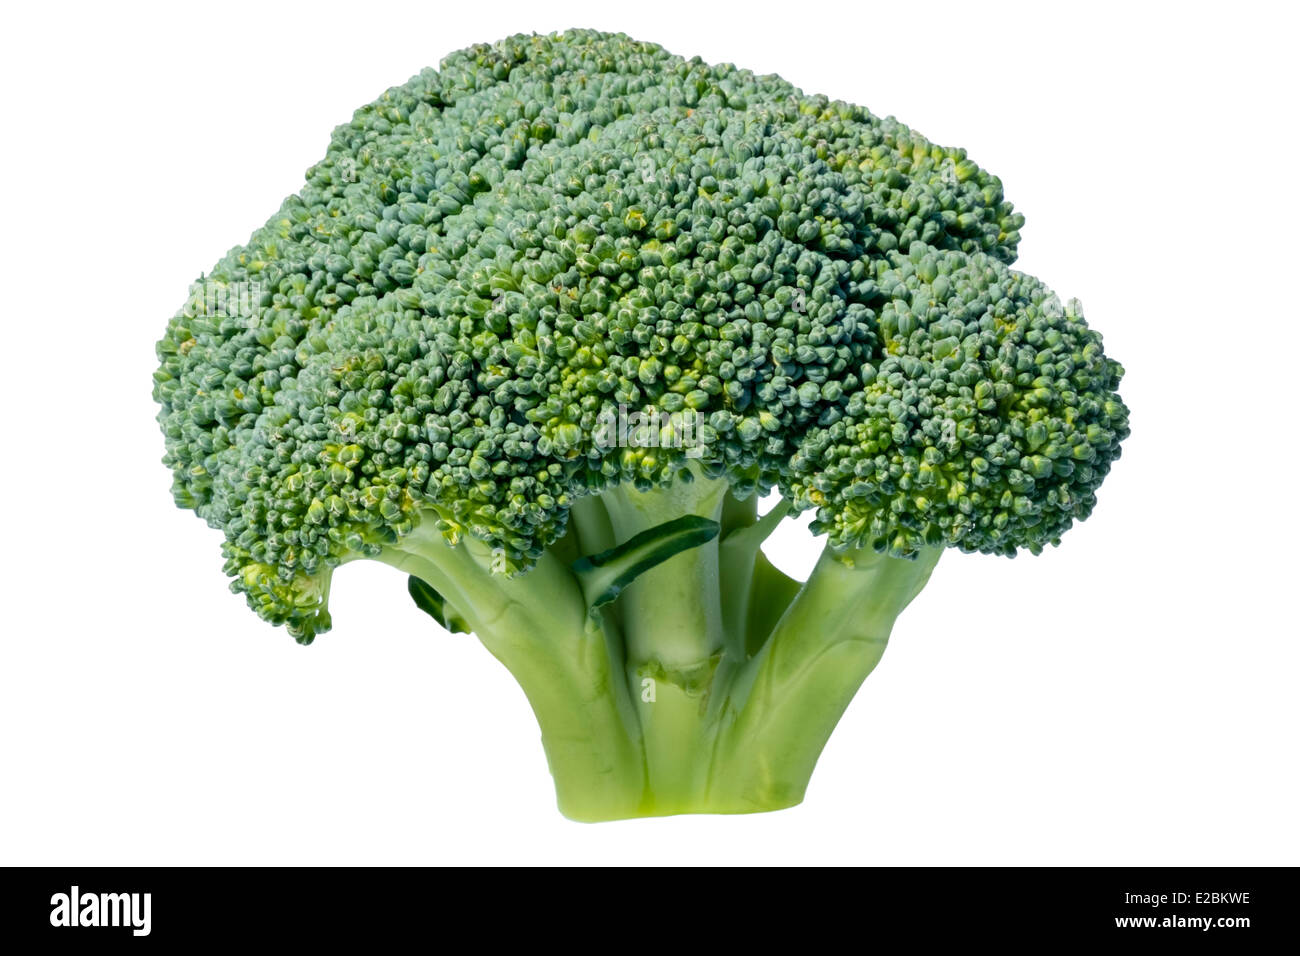 Brokkoli ausgeschnitten oder isoliert auf einem weißen Hintergrund. Stockfoto